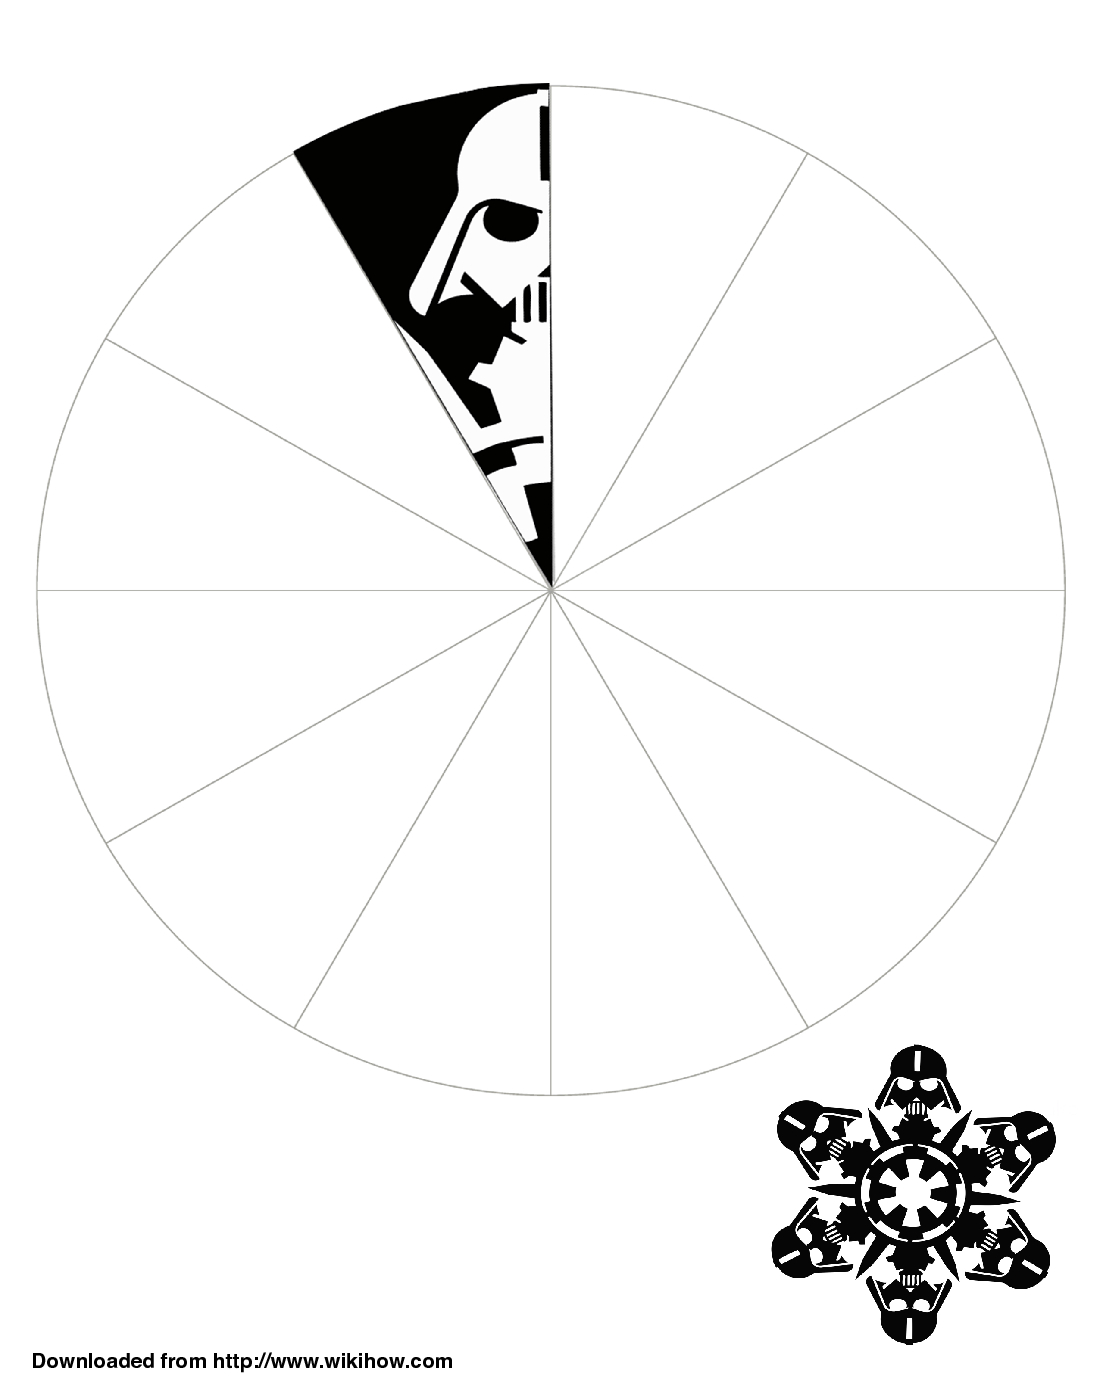 Printable Darth Vader Snowflake Template - Wikihow ganzes Vorlage Schneeflocke Scherenschnitt